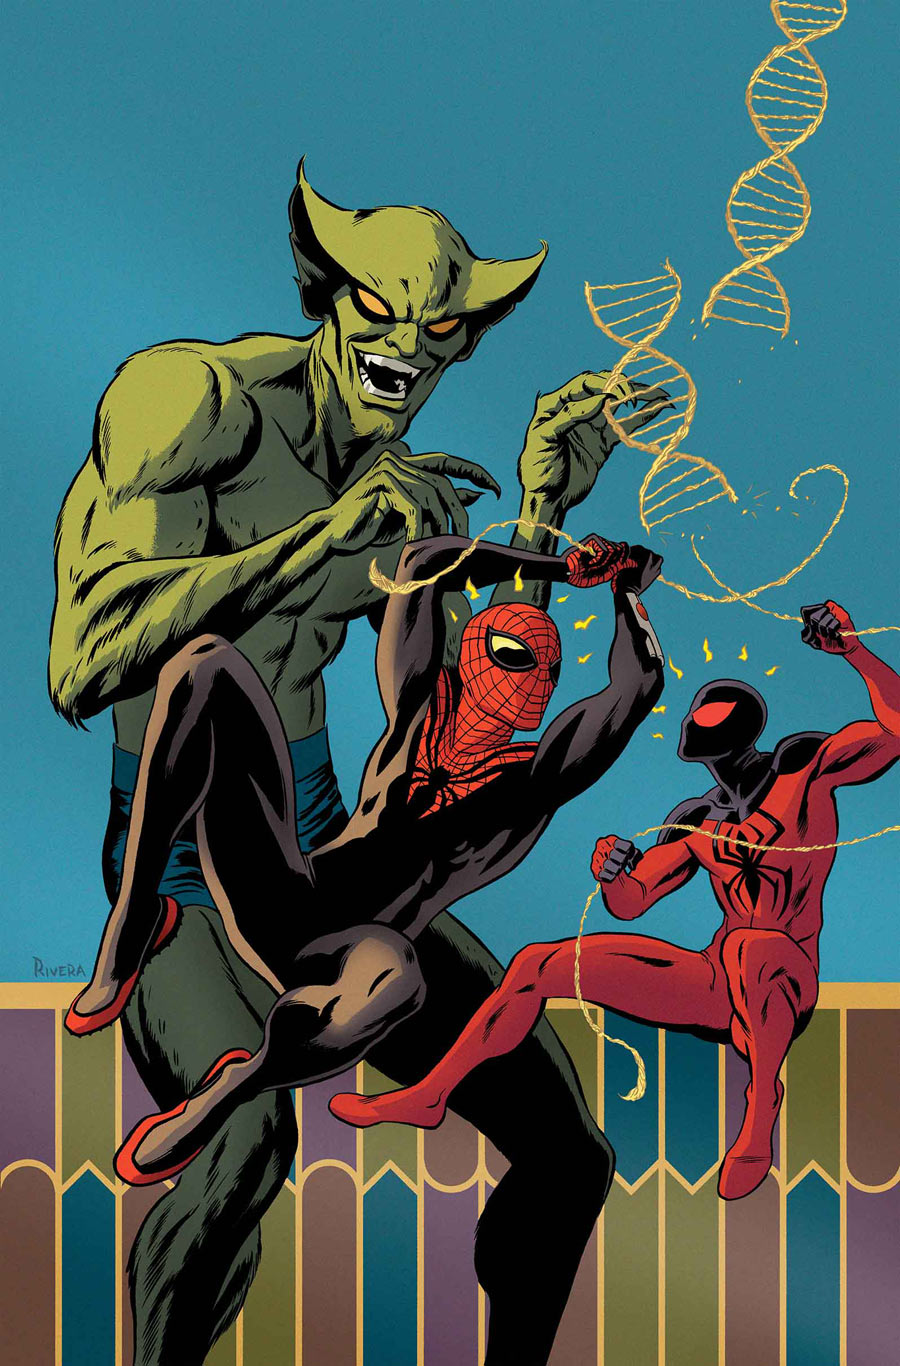 Superior Spider-Man Team-Up Vol 1 2 | Marvel Database | Fandom